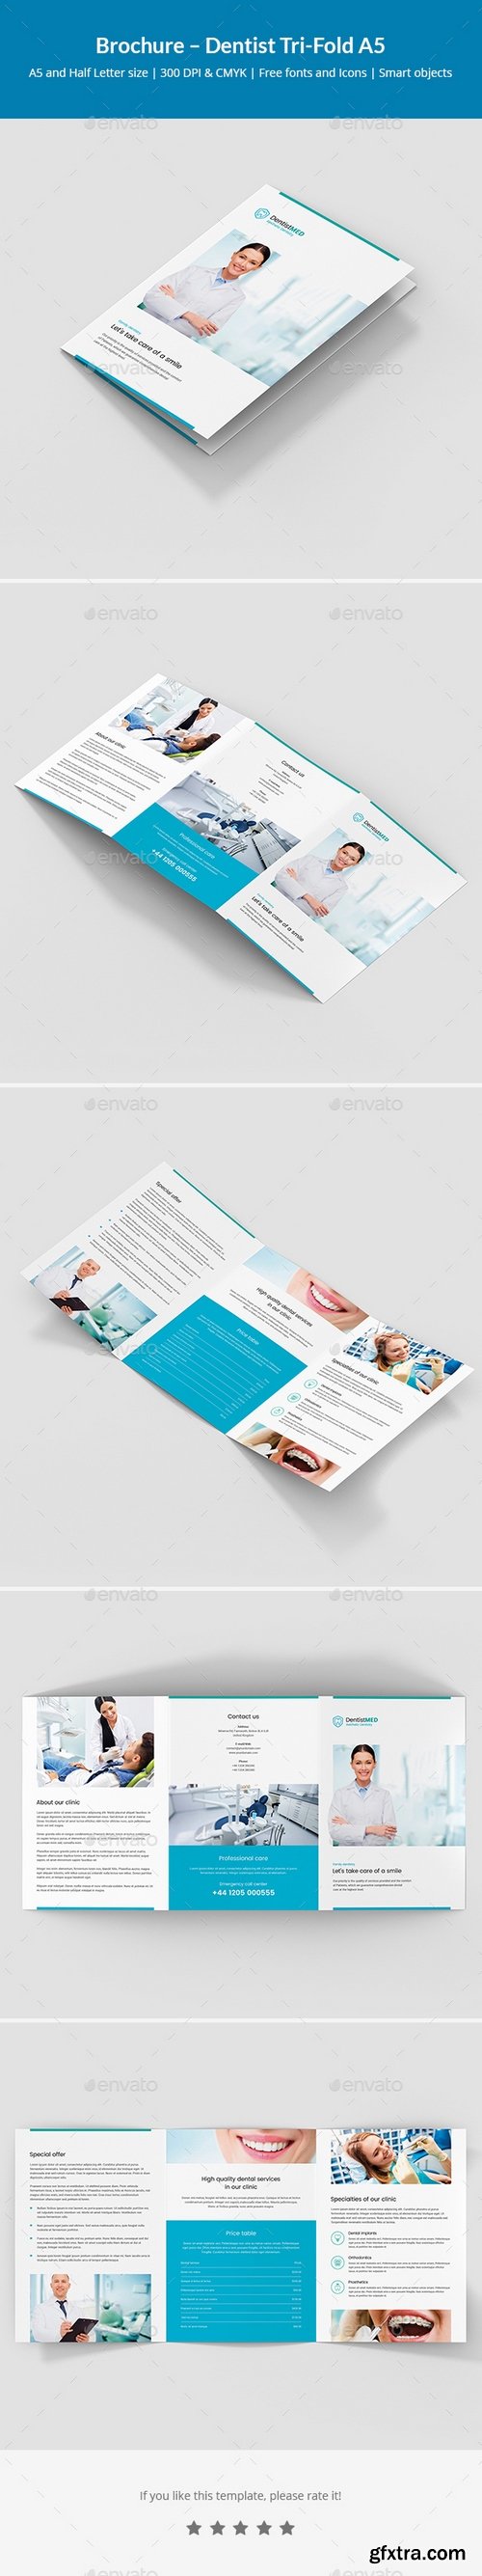 Graphicriver - Brochure – Dentist Tri-Fold A5 21130947